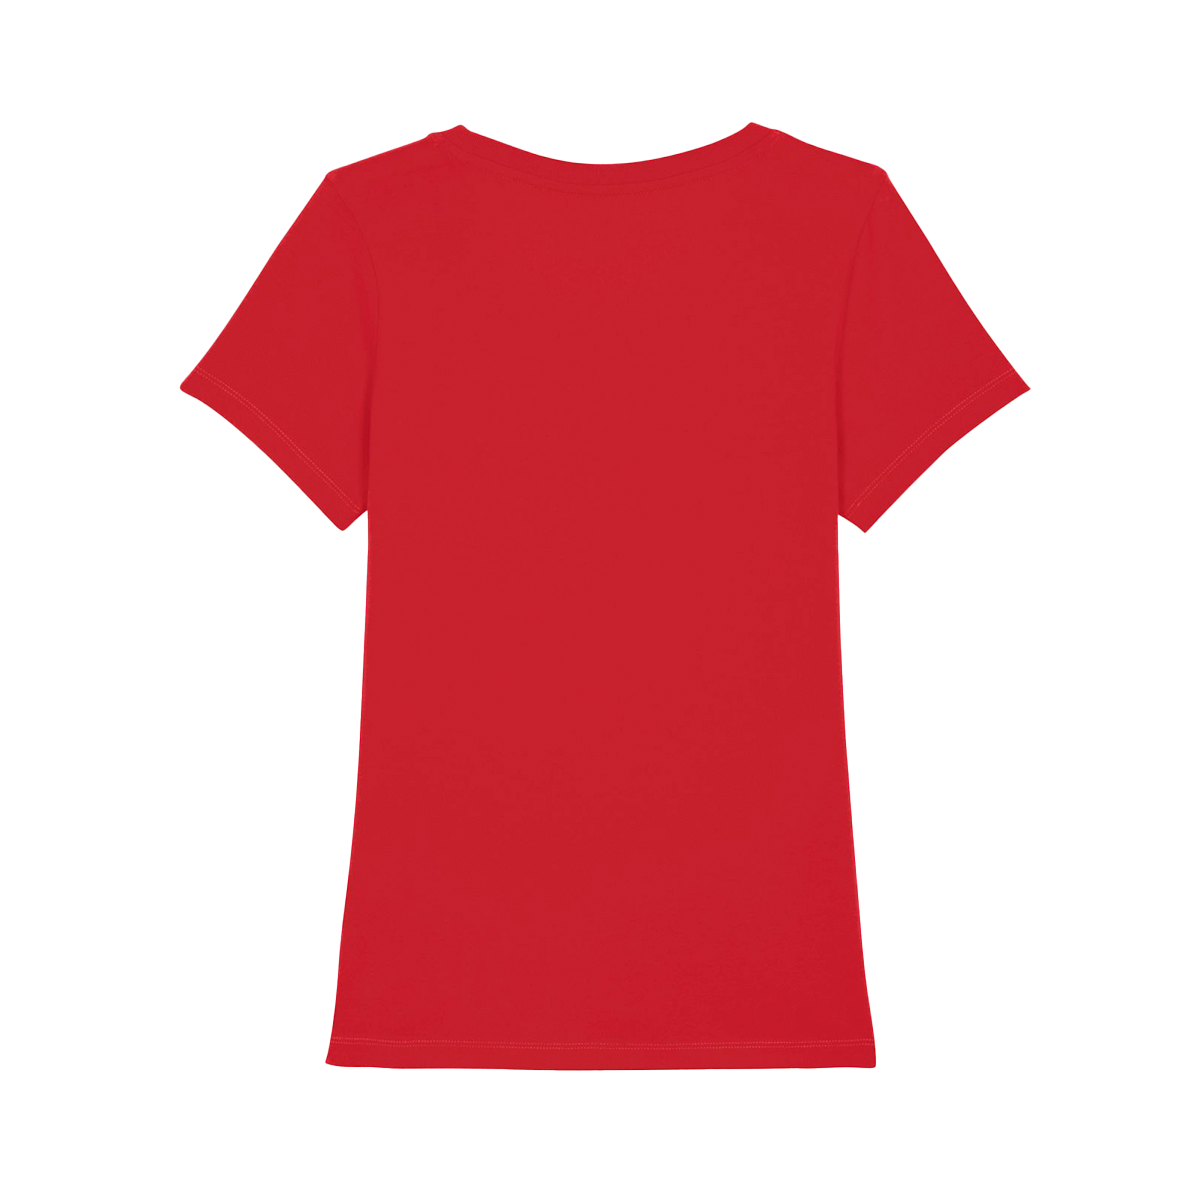 GCN Women's Core Red T-Shirt - Women's Red T-Shirt